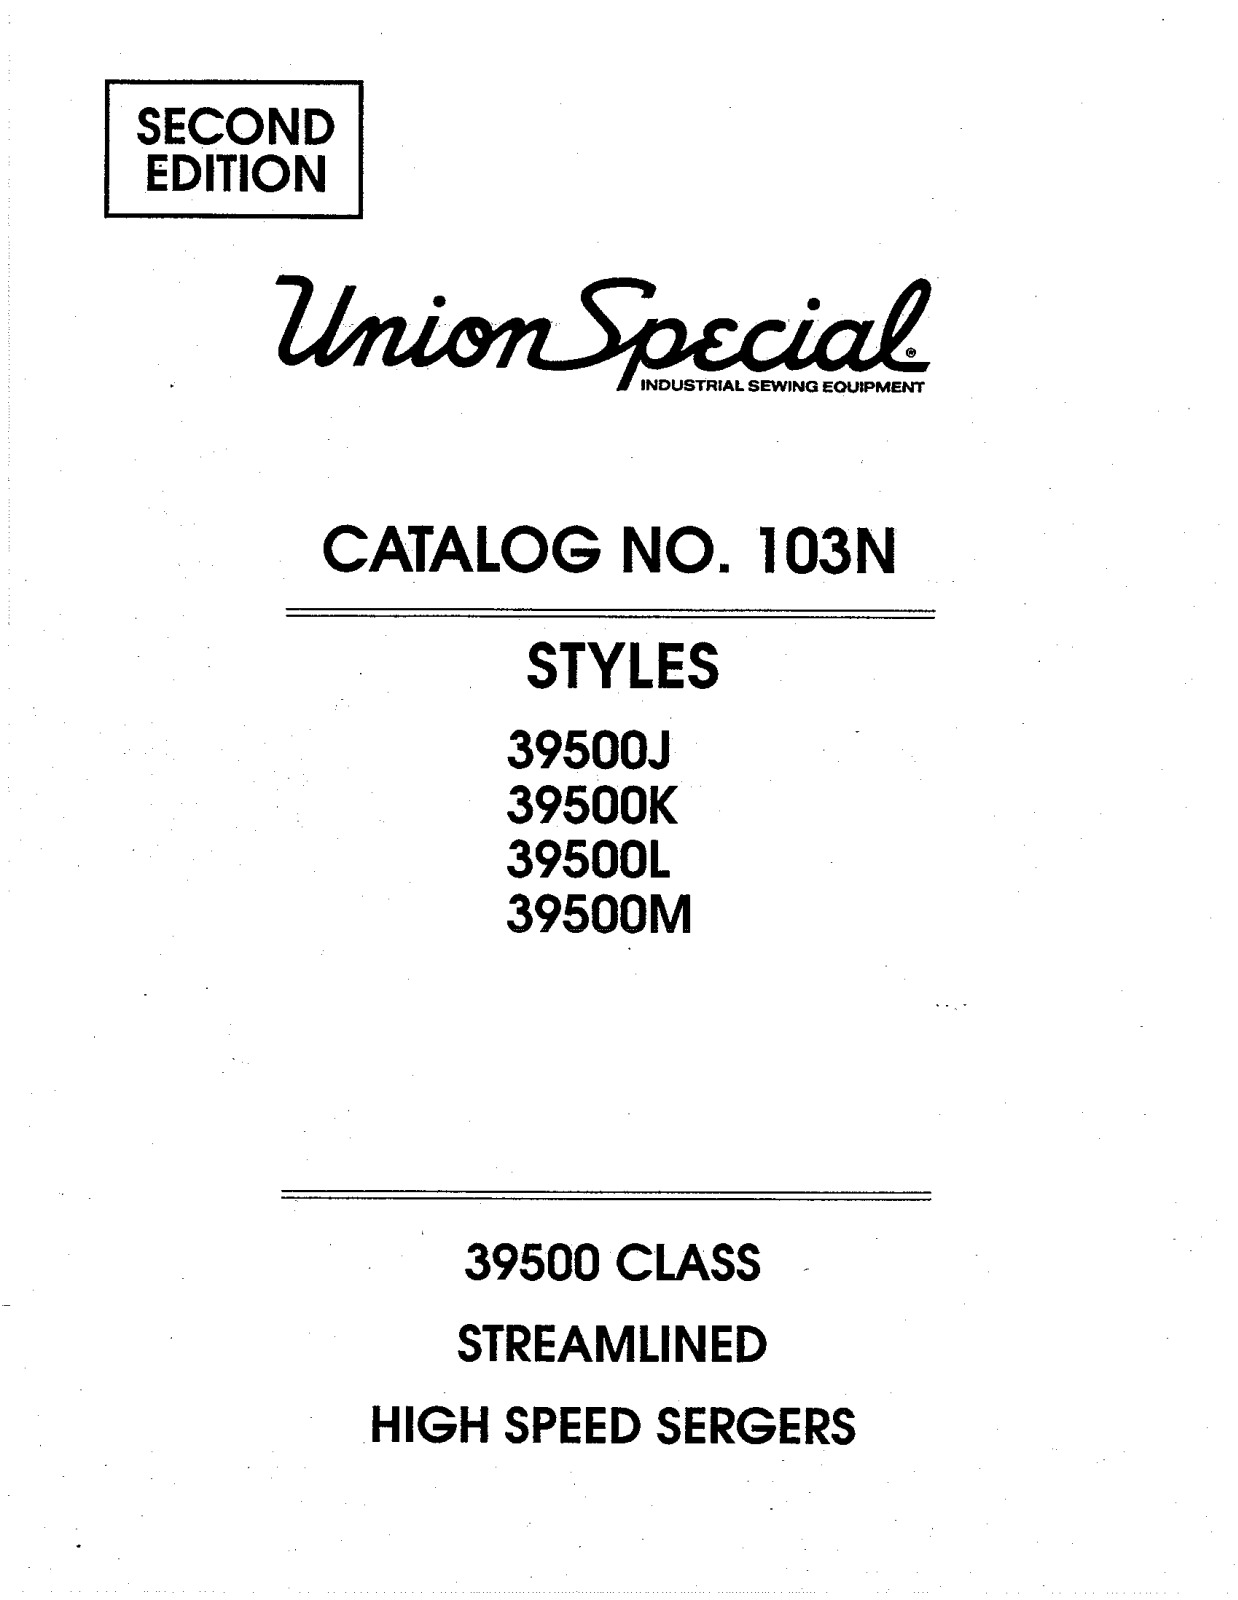 Union Special 39500J, 39500K, 39500L, 39500M Parts List